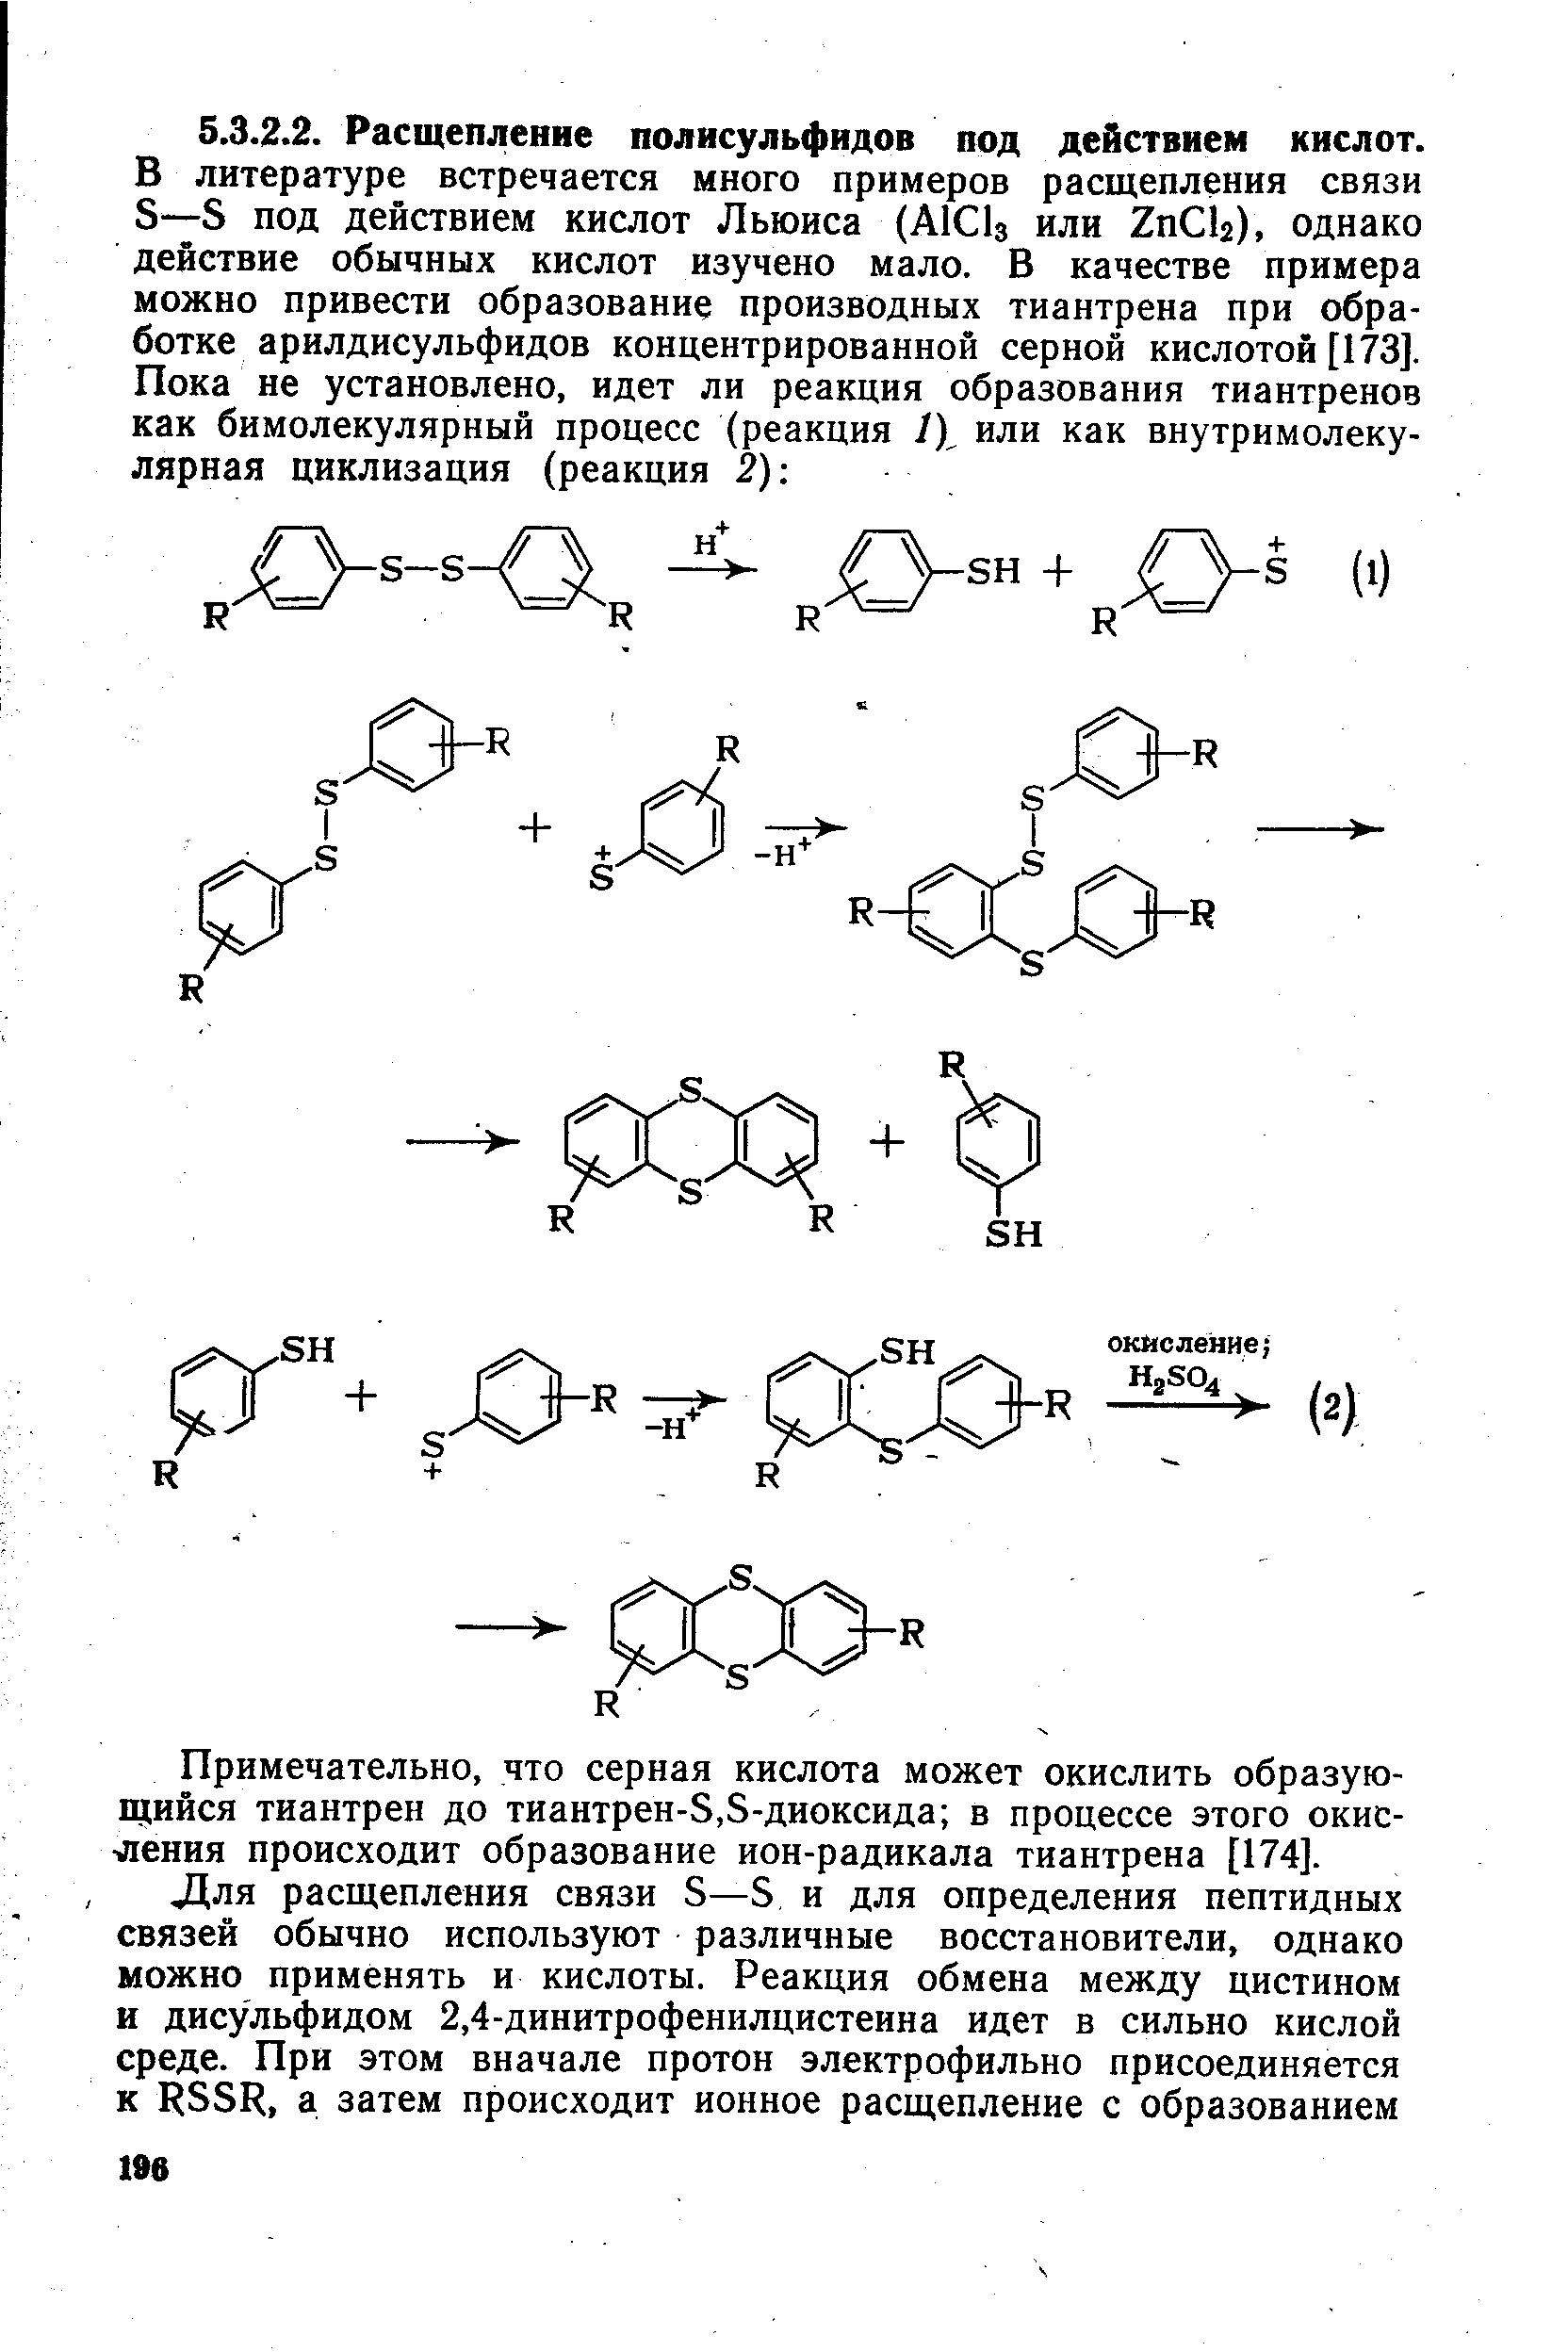 Примечательно, что серная кислота может окислить образующийся тиантрен до тиантрен-8,8-диоксида в процессе этого окисления происходит образование ион-радикала тиантрена [174].